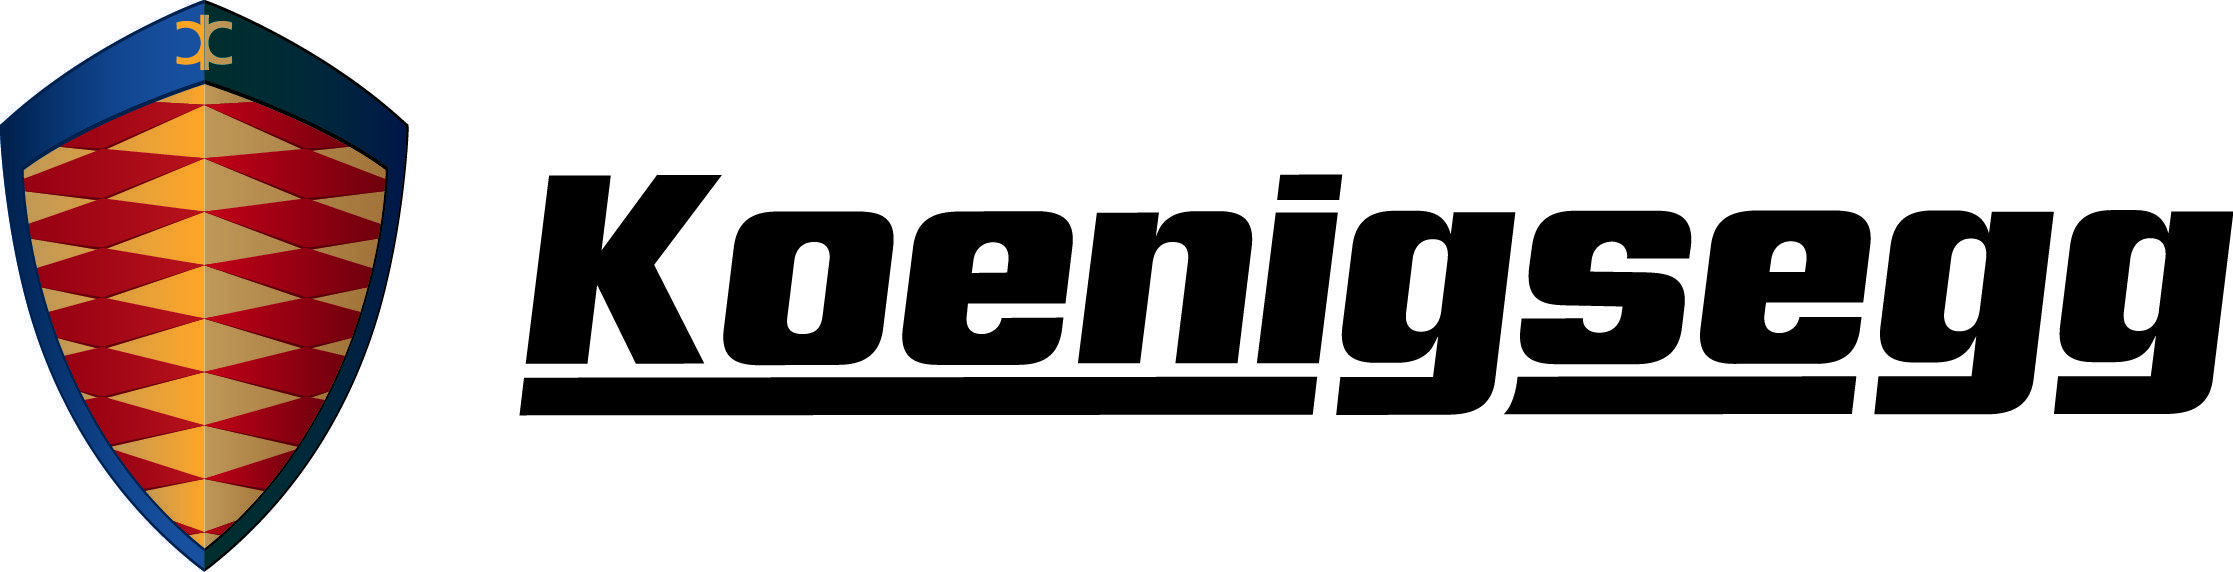 Koenigsegg Logo - Koenigsegg